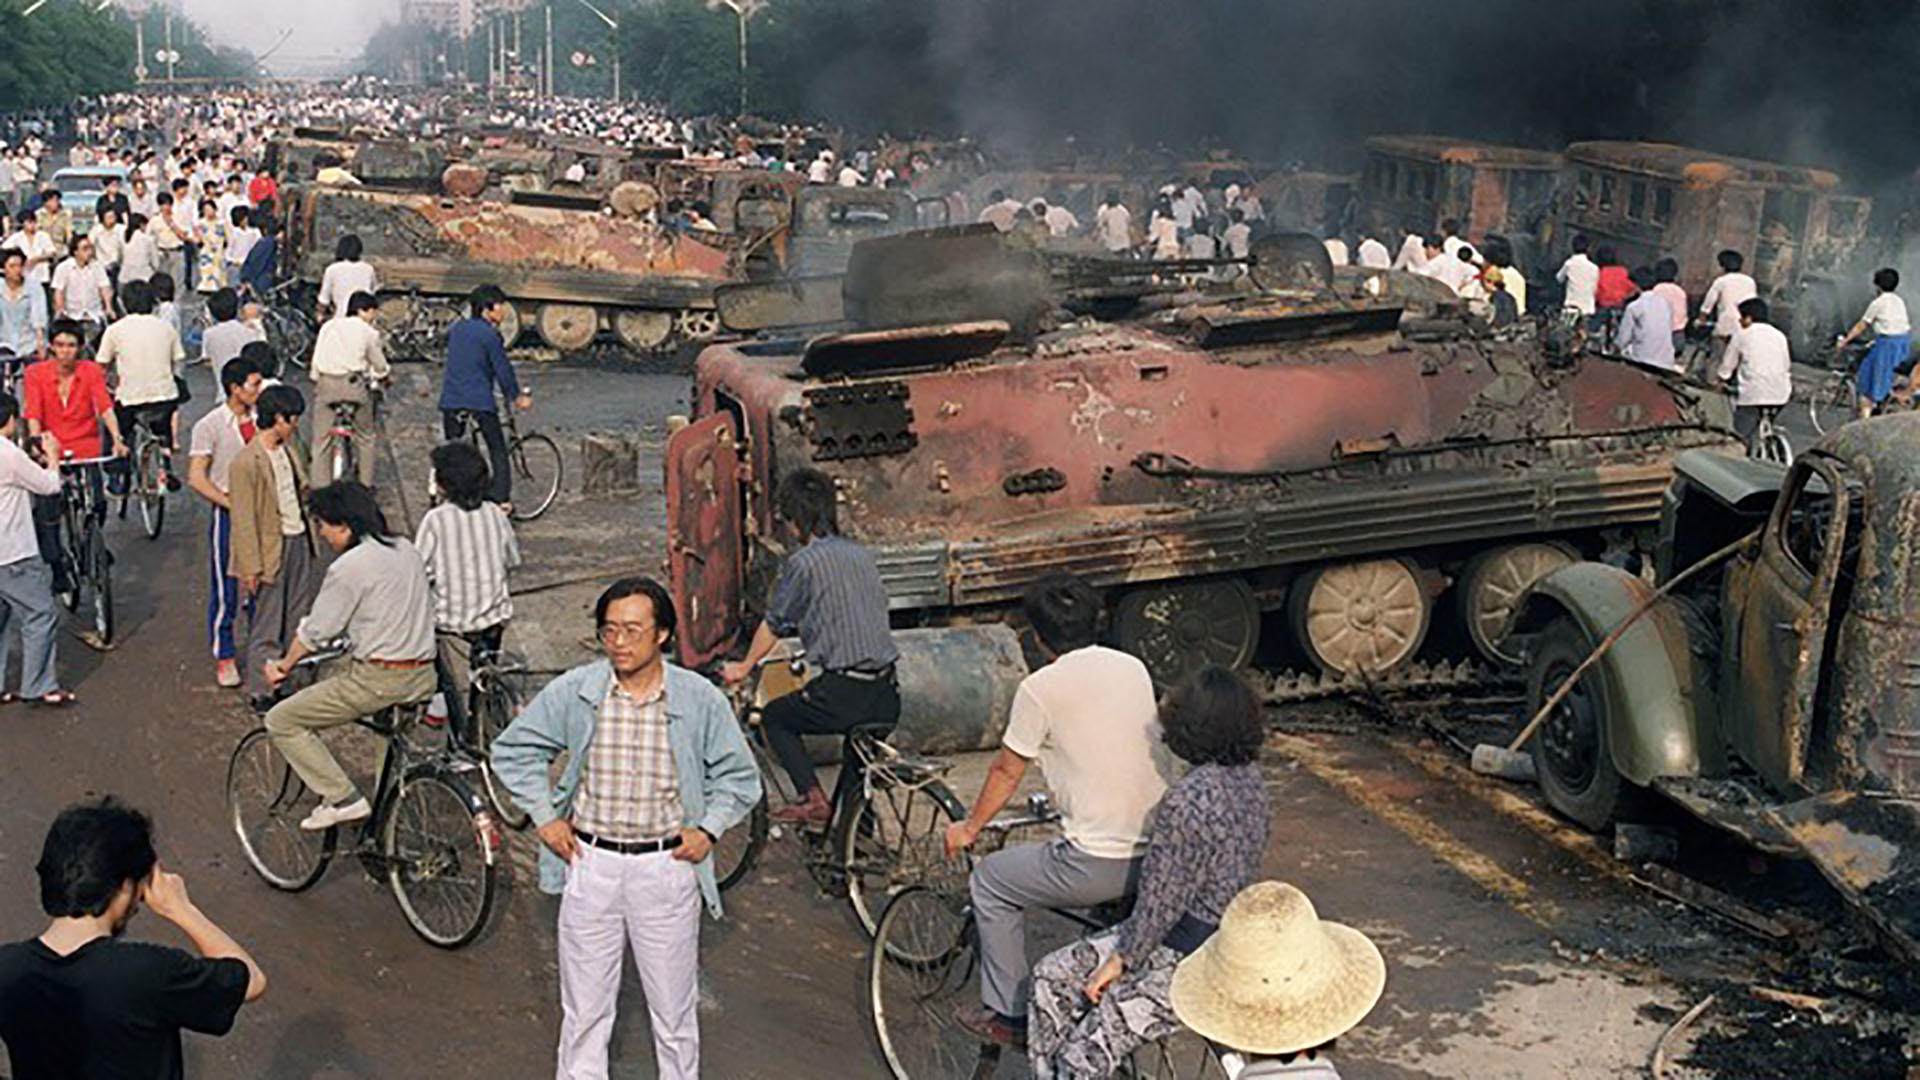 El régimen chino estableció un fuerte control de seguridad que evitó cualquier actividad en honor a los fallecidos en la masacre de Tiananmen 